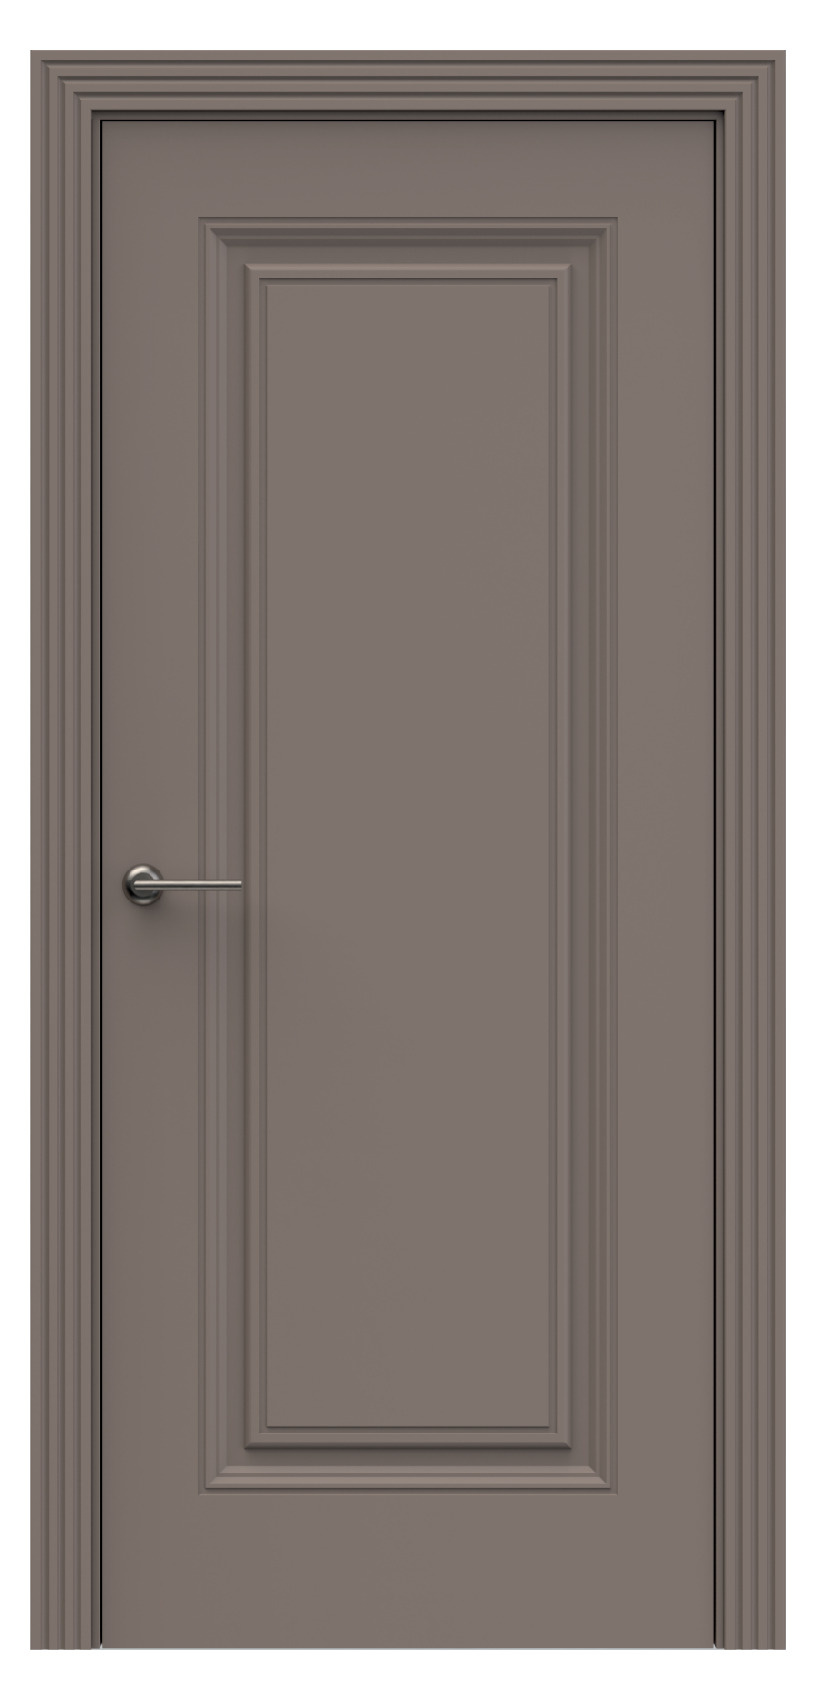 Questdoors Межкомнатная дверь QB7, арт. 17908 - фото №1